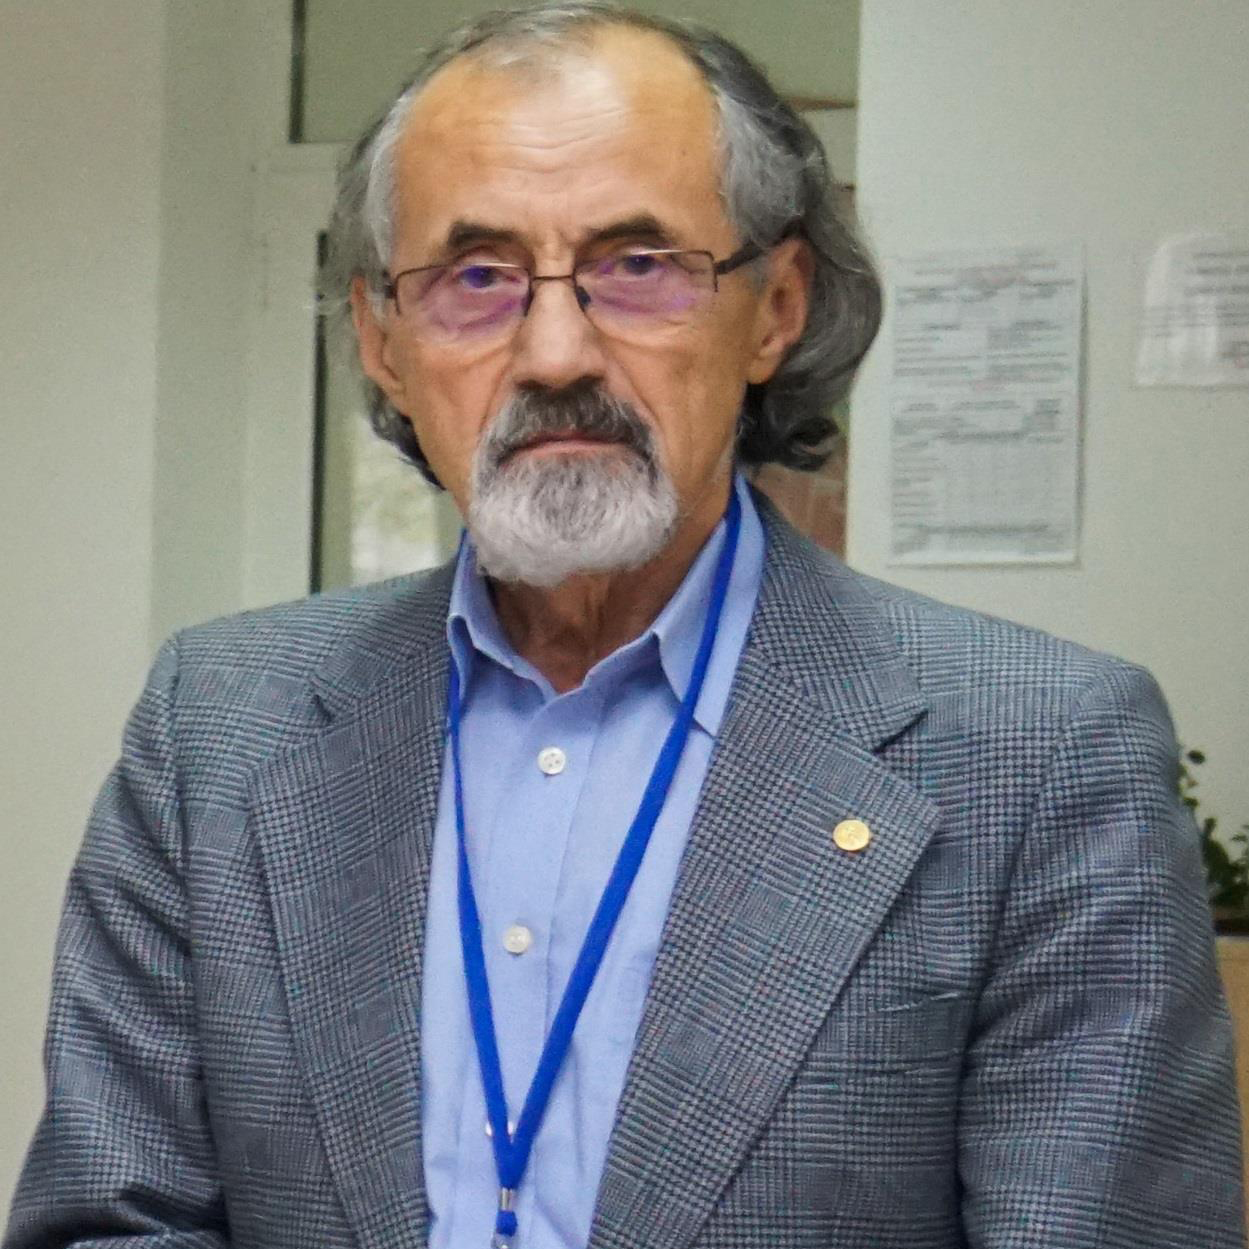 Academician Gheorghe Păun